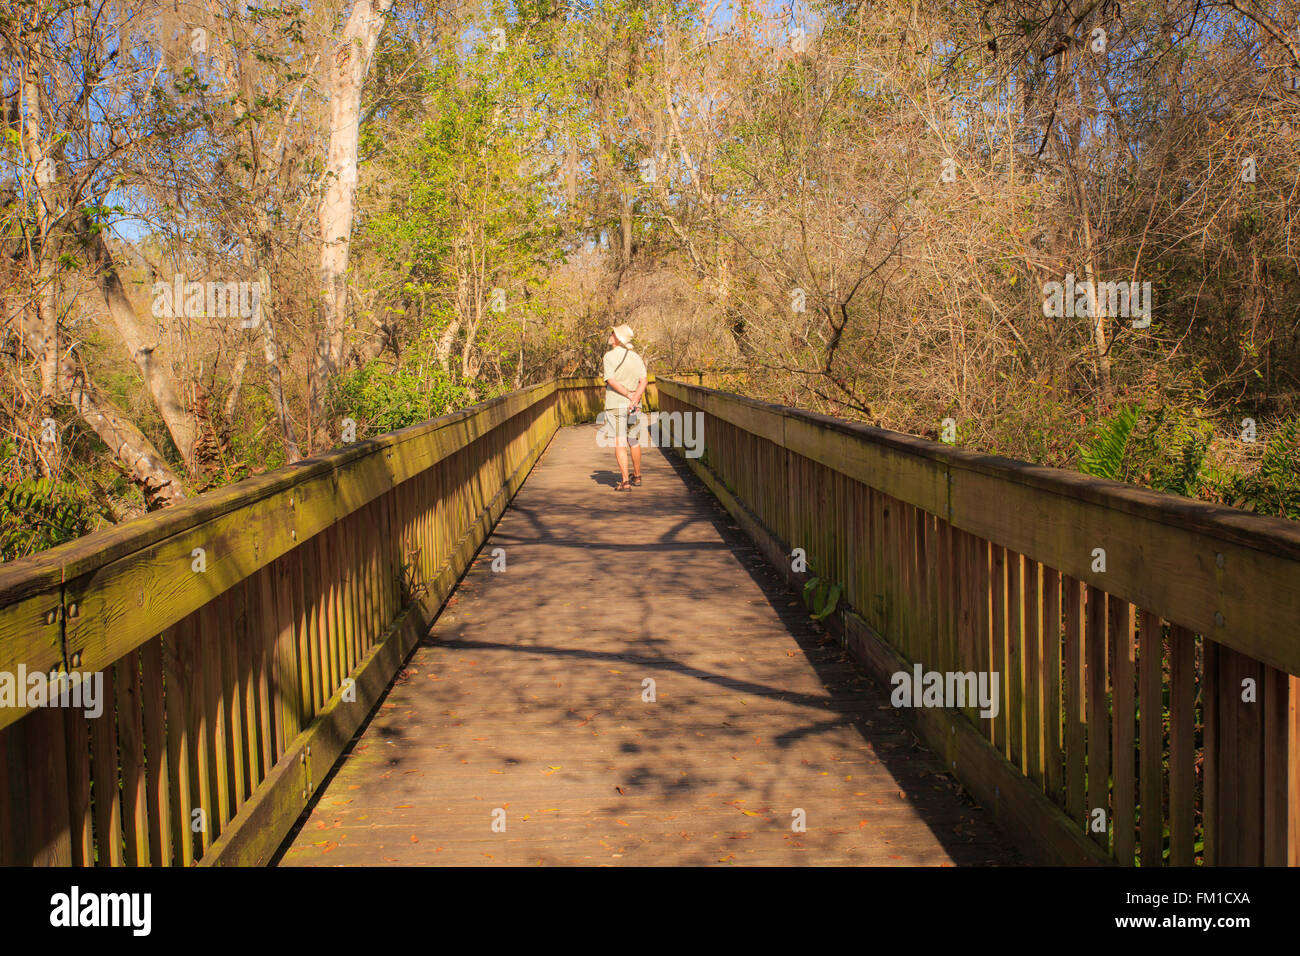 Passeggiata Lungomare - uomo a camminare sul marciapiede in Sawgrass Lake Park, San Pietroburgo, Florida, Stati Uniti d'America Foto Stock